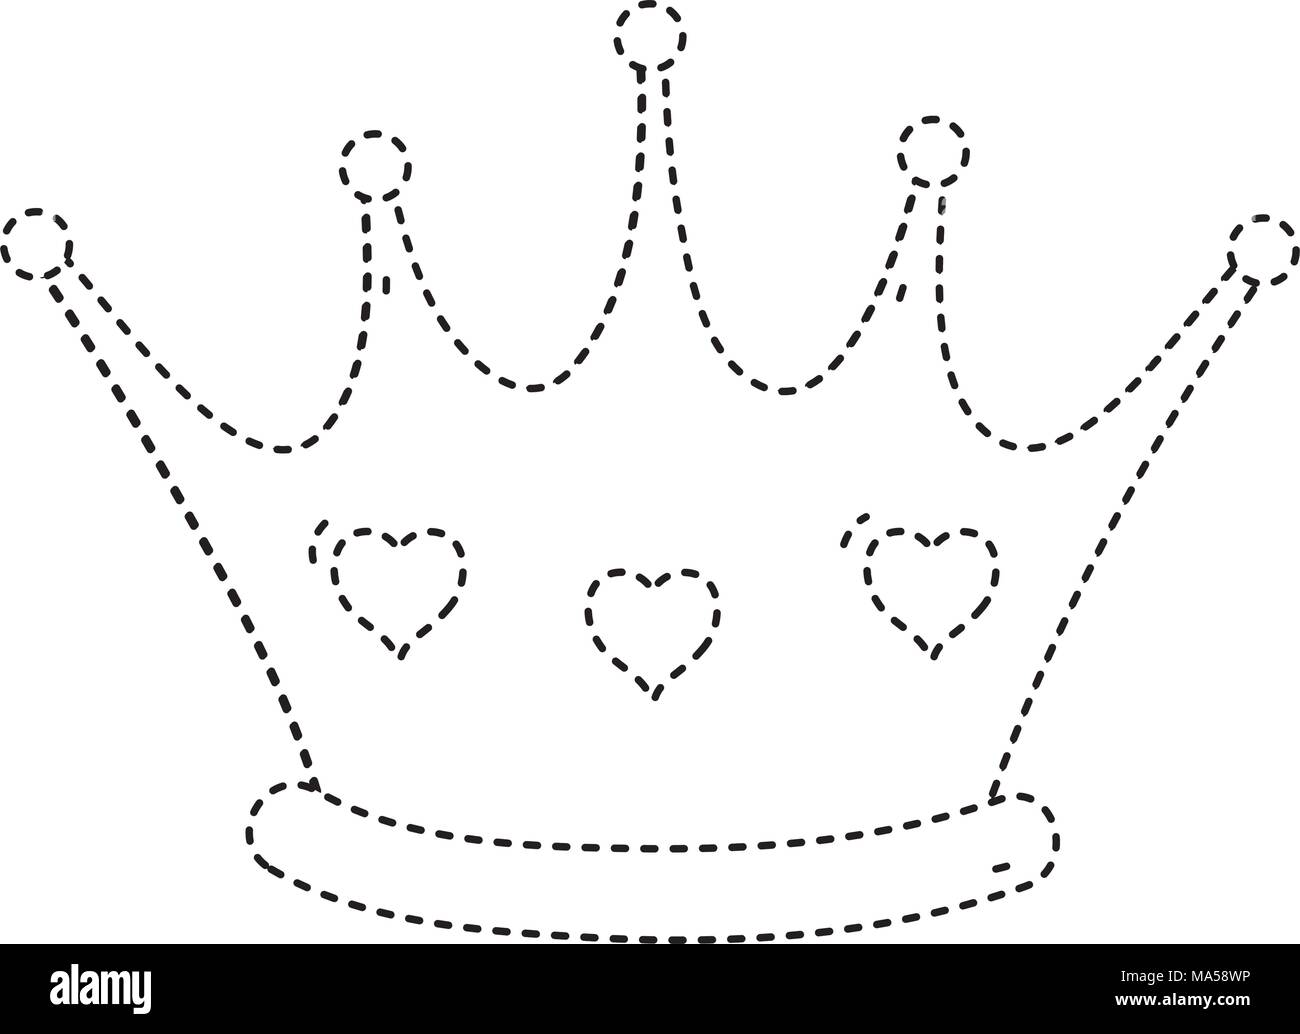 https://c8.alamy.com/compit/ma58wp/forma-tratteggiata-regina-corona-di-lusso-con-decorazione-di-cuori-ma58wp.jpg